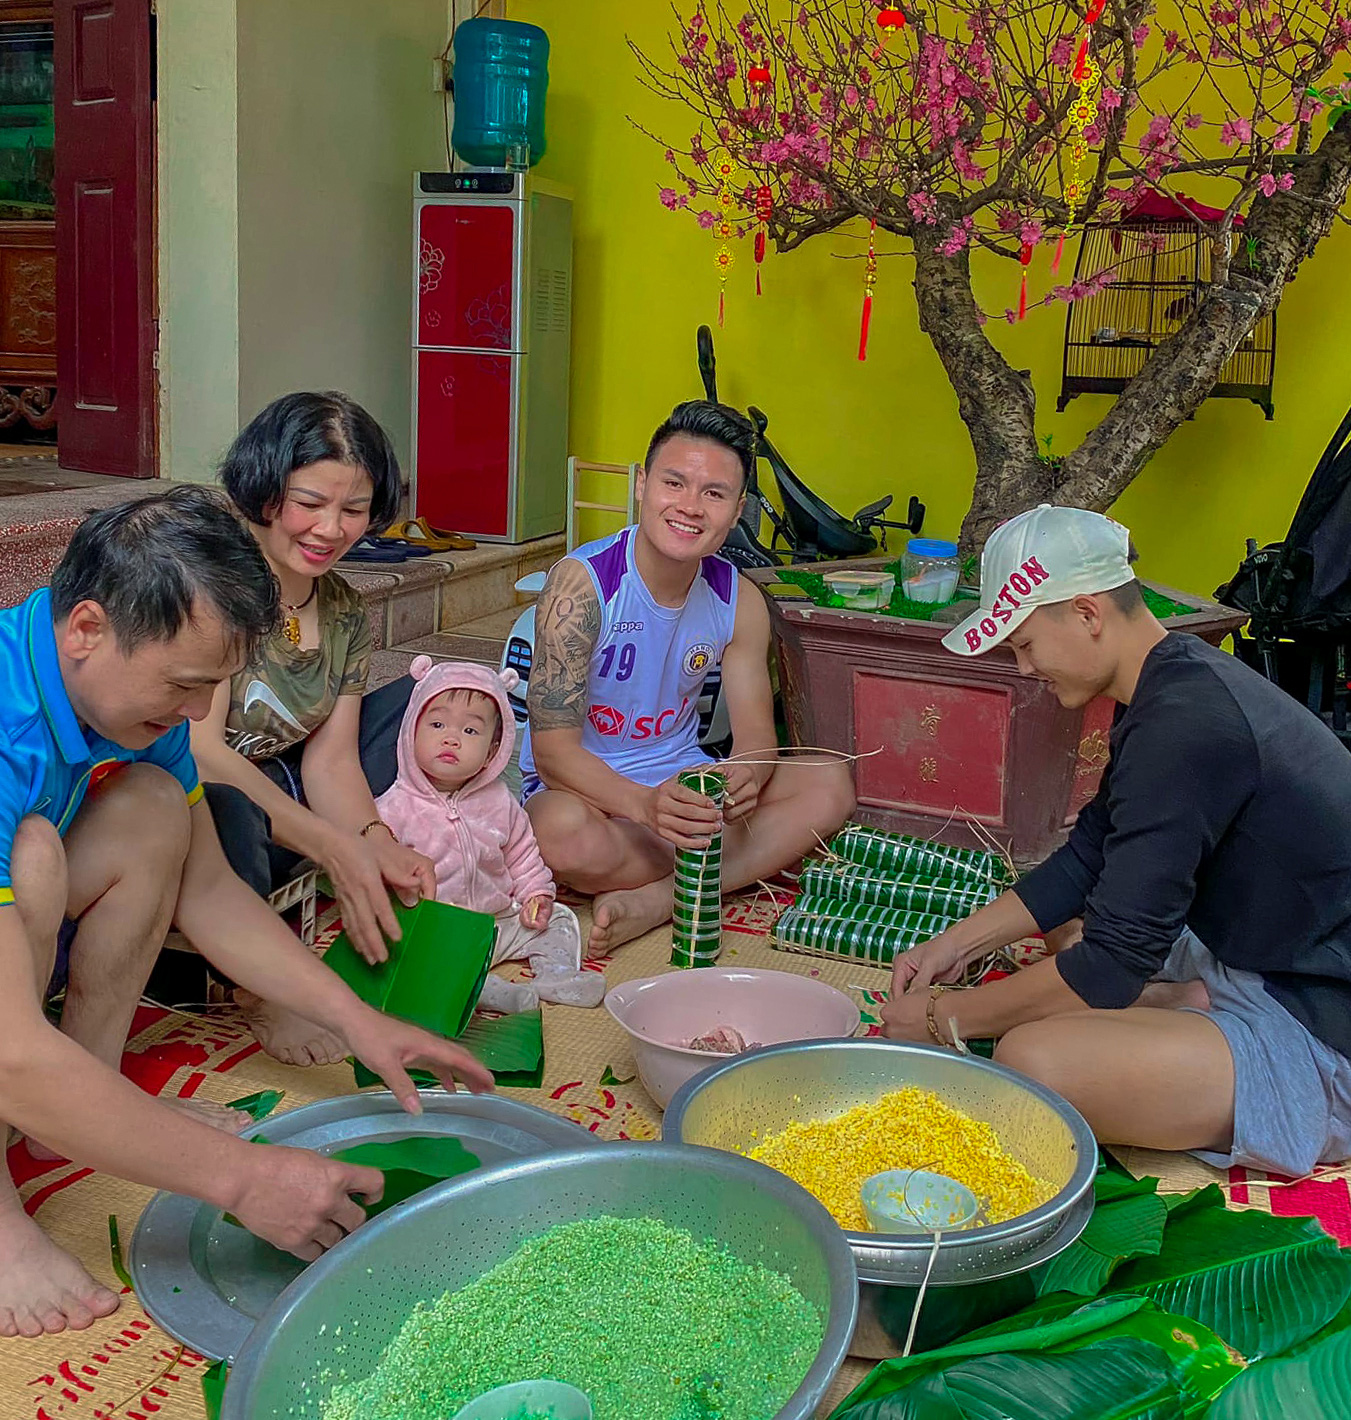 Tết là lễ hội truyền thống của Việt Nam và cũng là thời gian để gia đình đoàn viên được quây quần bên nhau. Cùng chụp một bức ảnh vui tươi và đầy ý nghĩa để lưu giữ những kỷ niệm đáng nhớ trong Tết của gia đình bạn nhé!